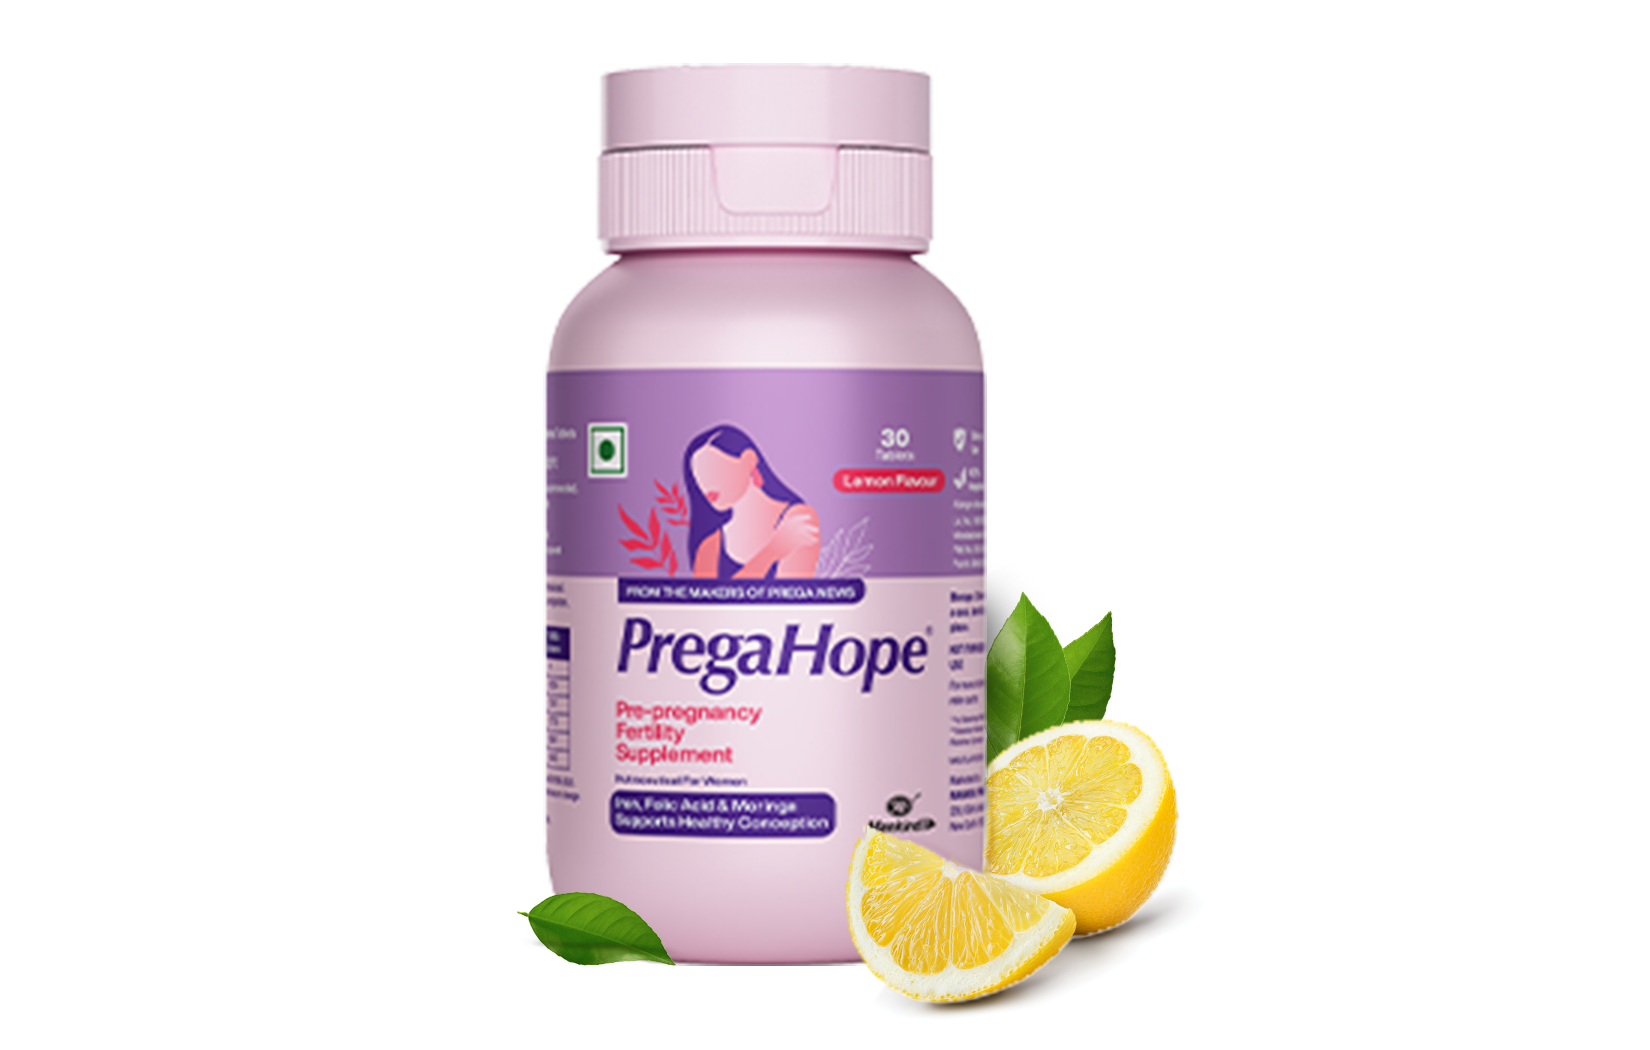 Pre-conceptional Fertility Supplement For Women in lemon flavour